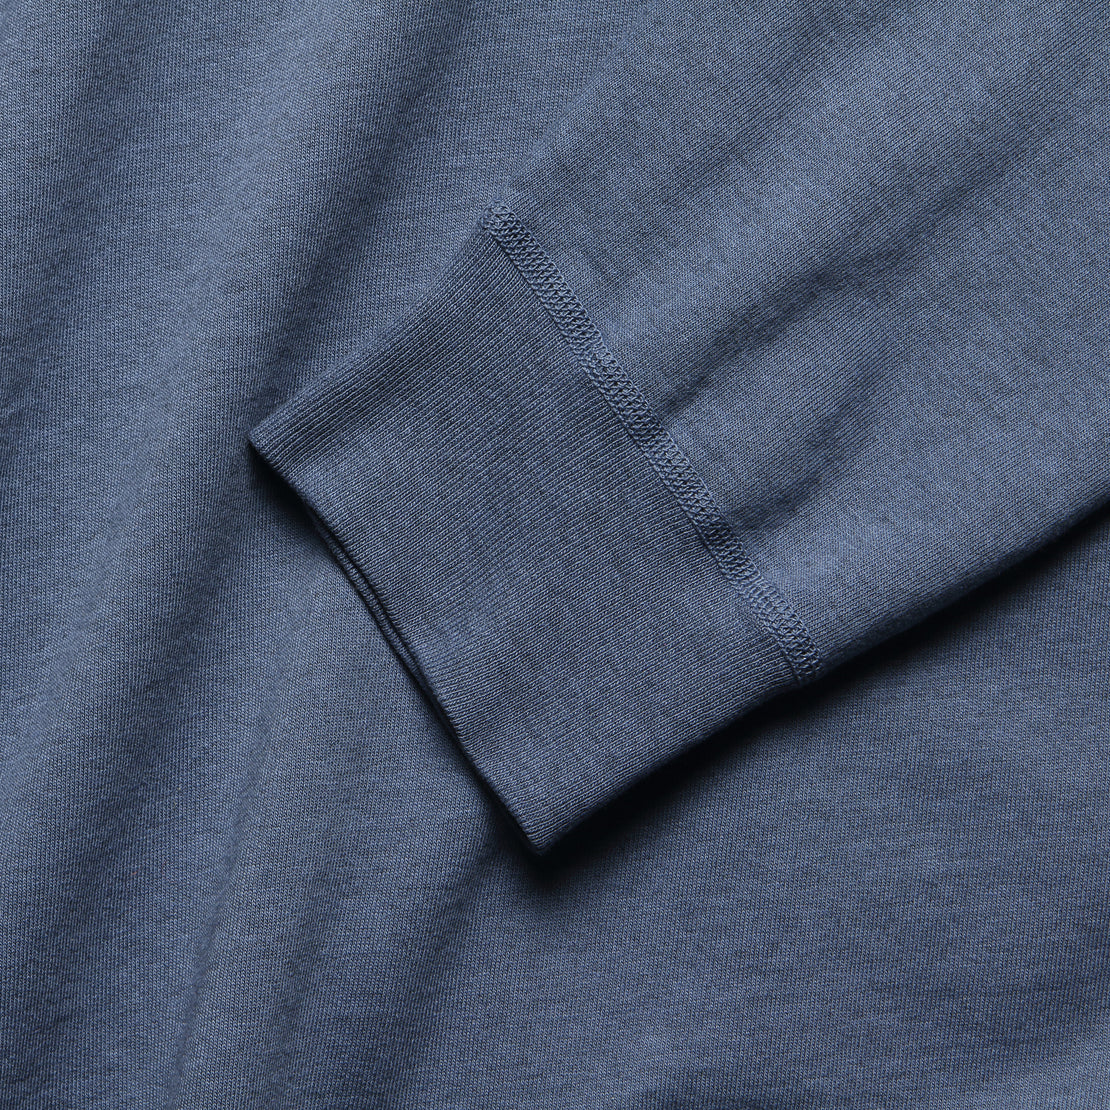 Heather Fleece Sweatshirt - Good Blue - Save Khaki - STAG Provisions - Tops - Fleece / Sweatshirt